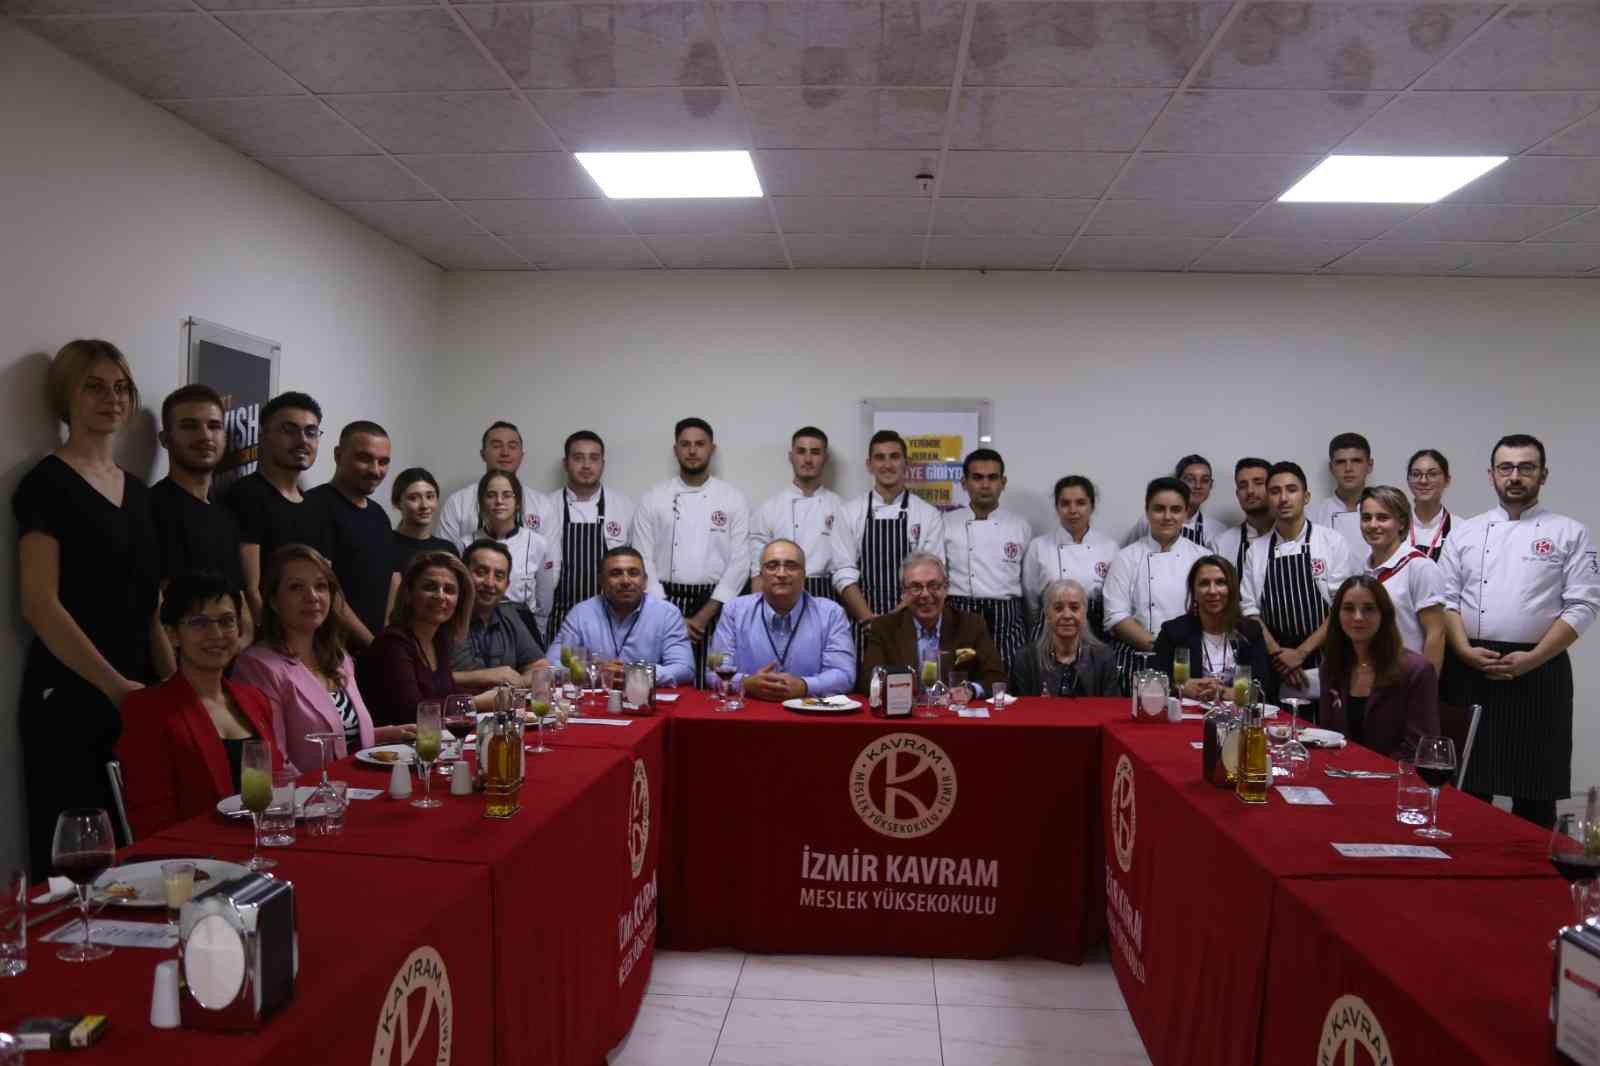 İzmir’in ilk ve tek akreditasyon sahibi Aşçılık Programı oldular